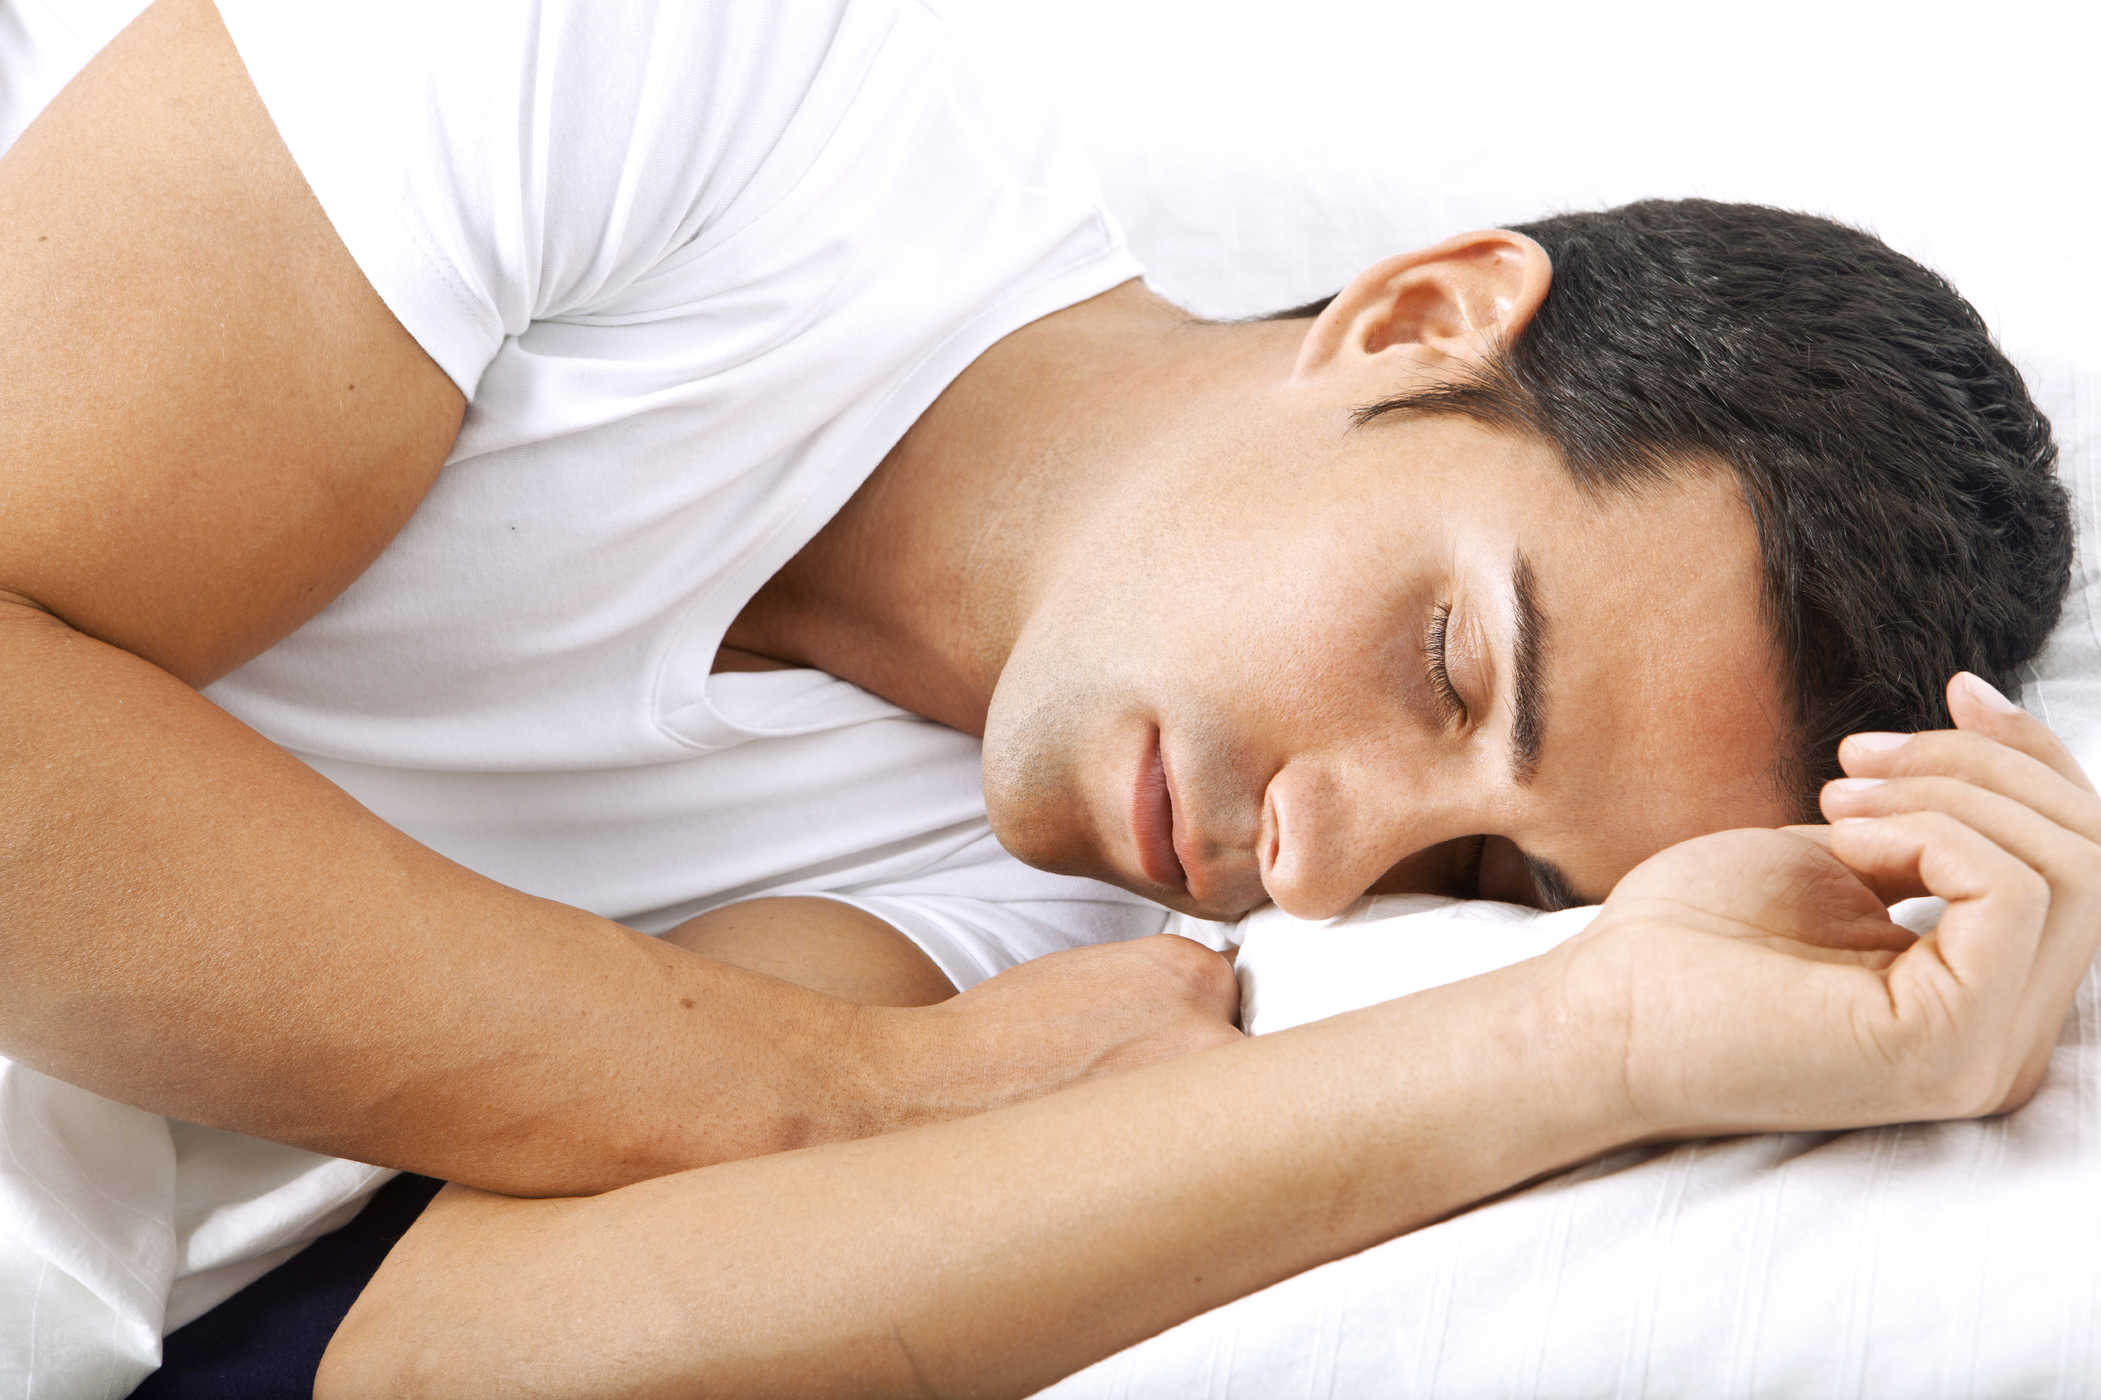 Conozca el síndrome de la bella durmiente, un trastorno del sueño muy prolongado